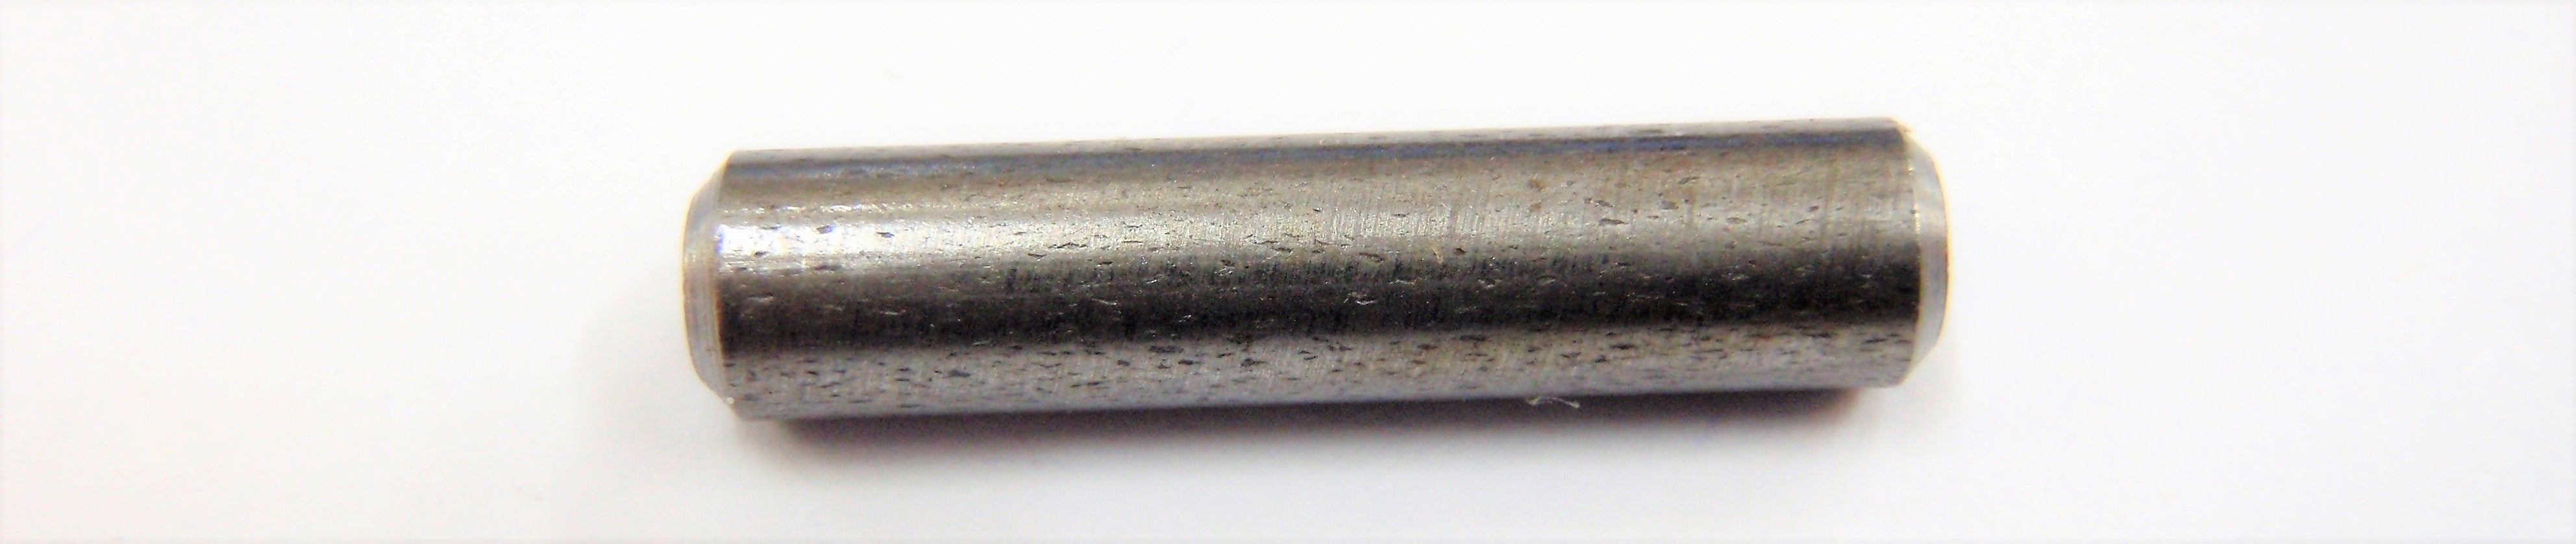 Lanber Cocking Rod Retaining Pin (SPART1625)